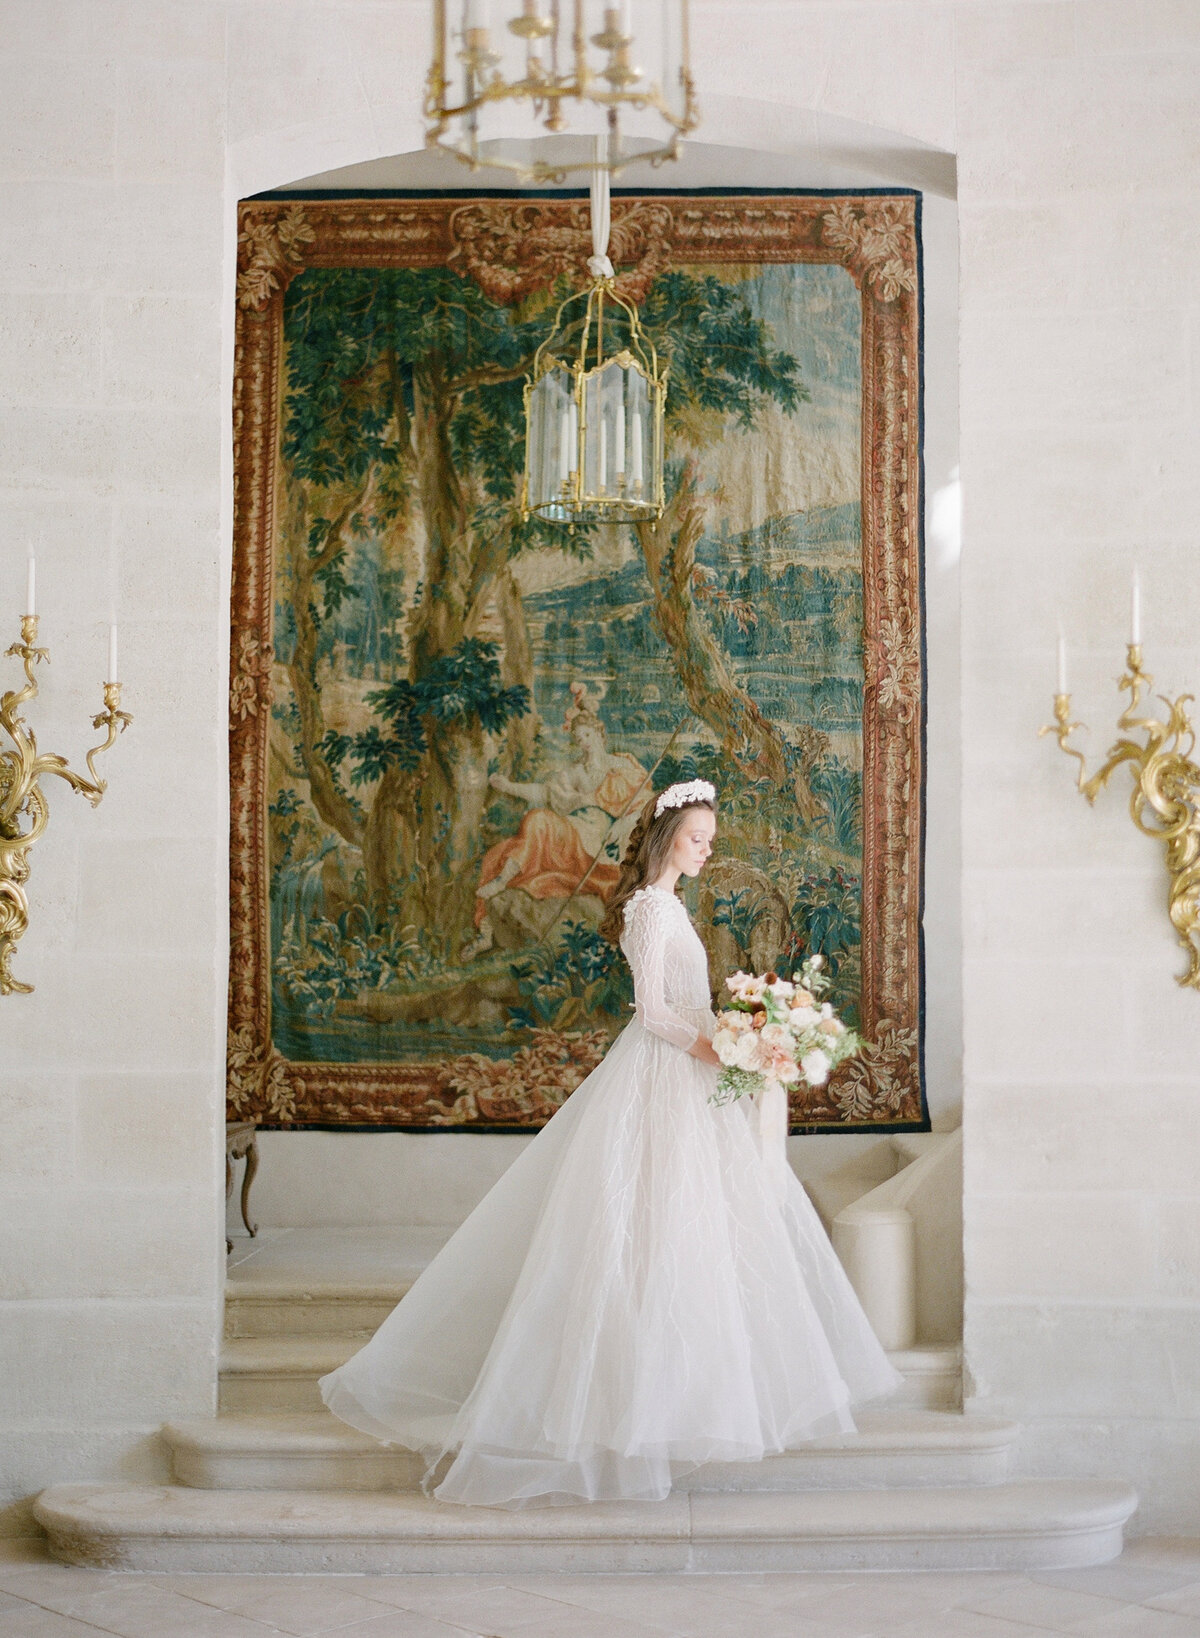 Château de Villette bride portrait in France destination wedding